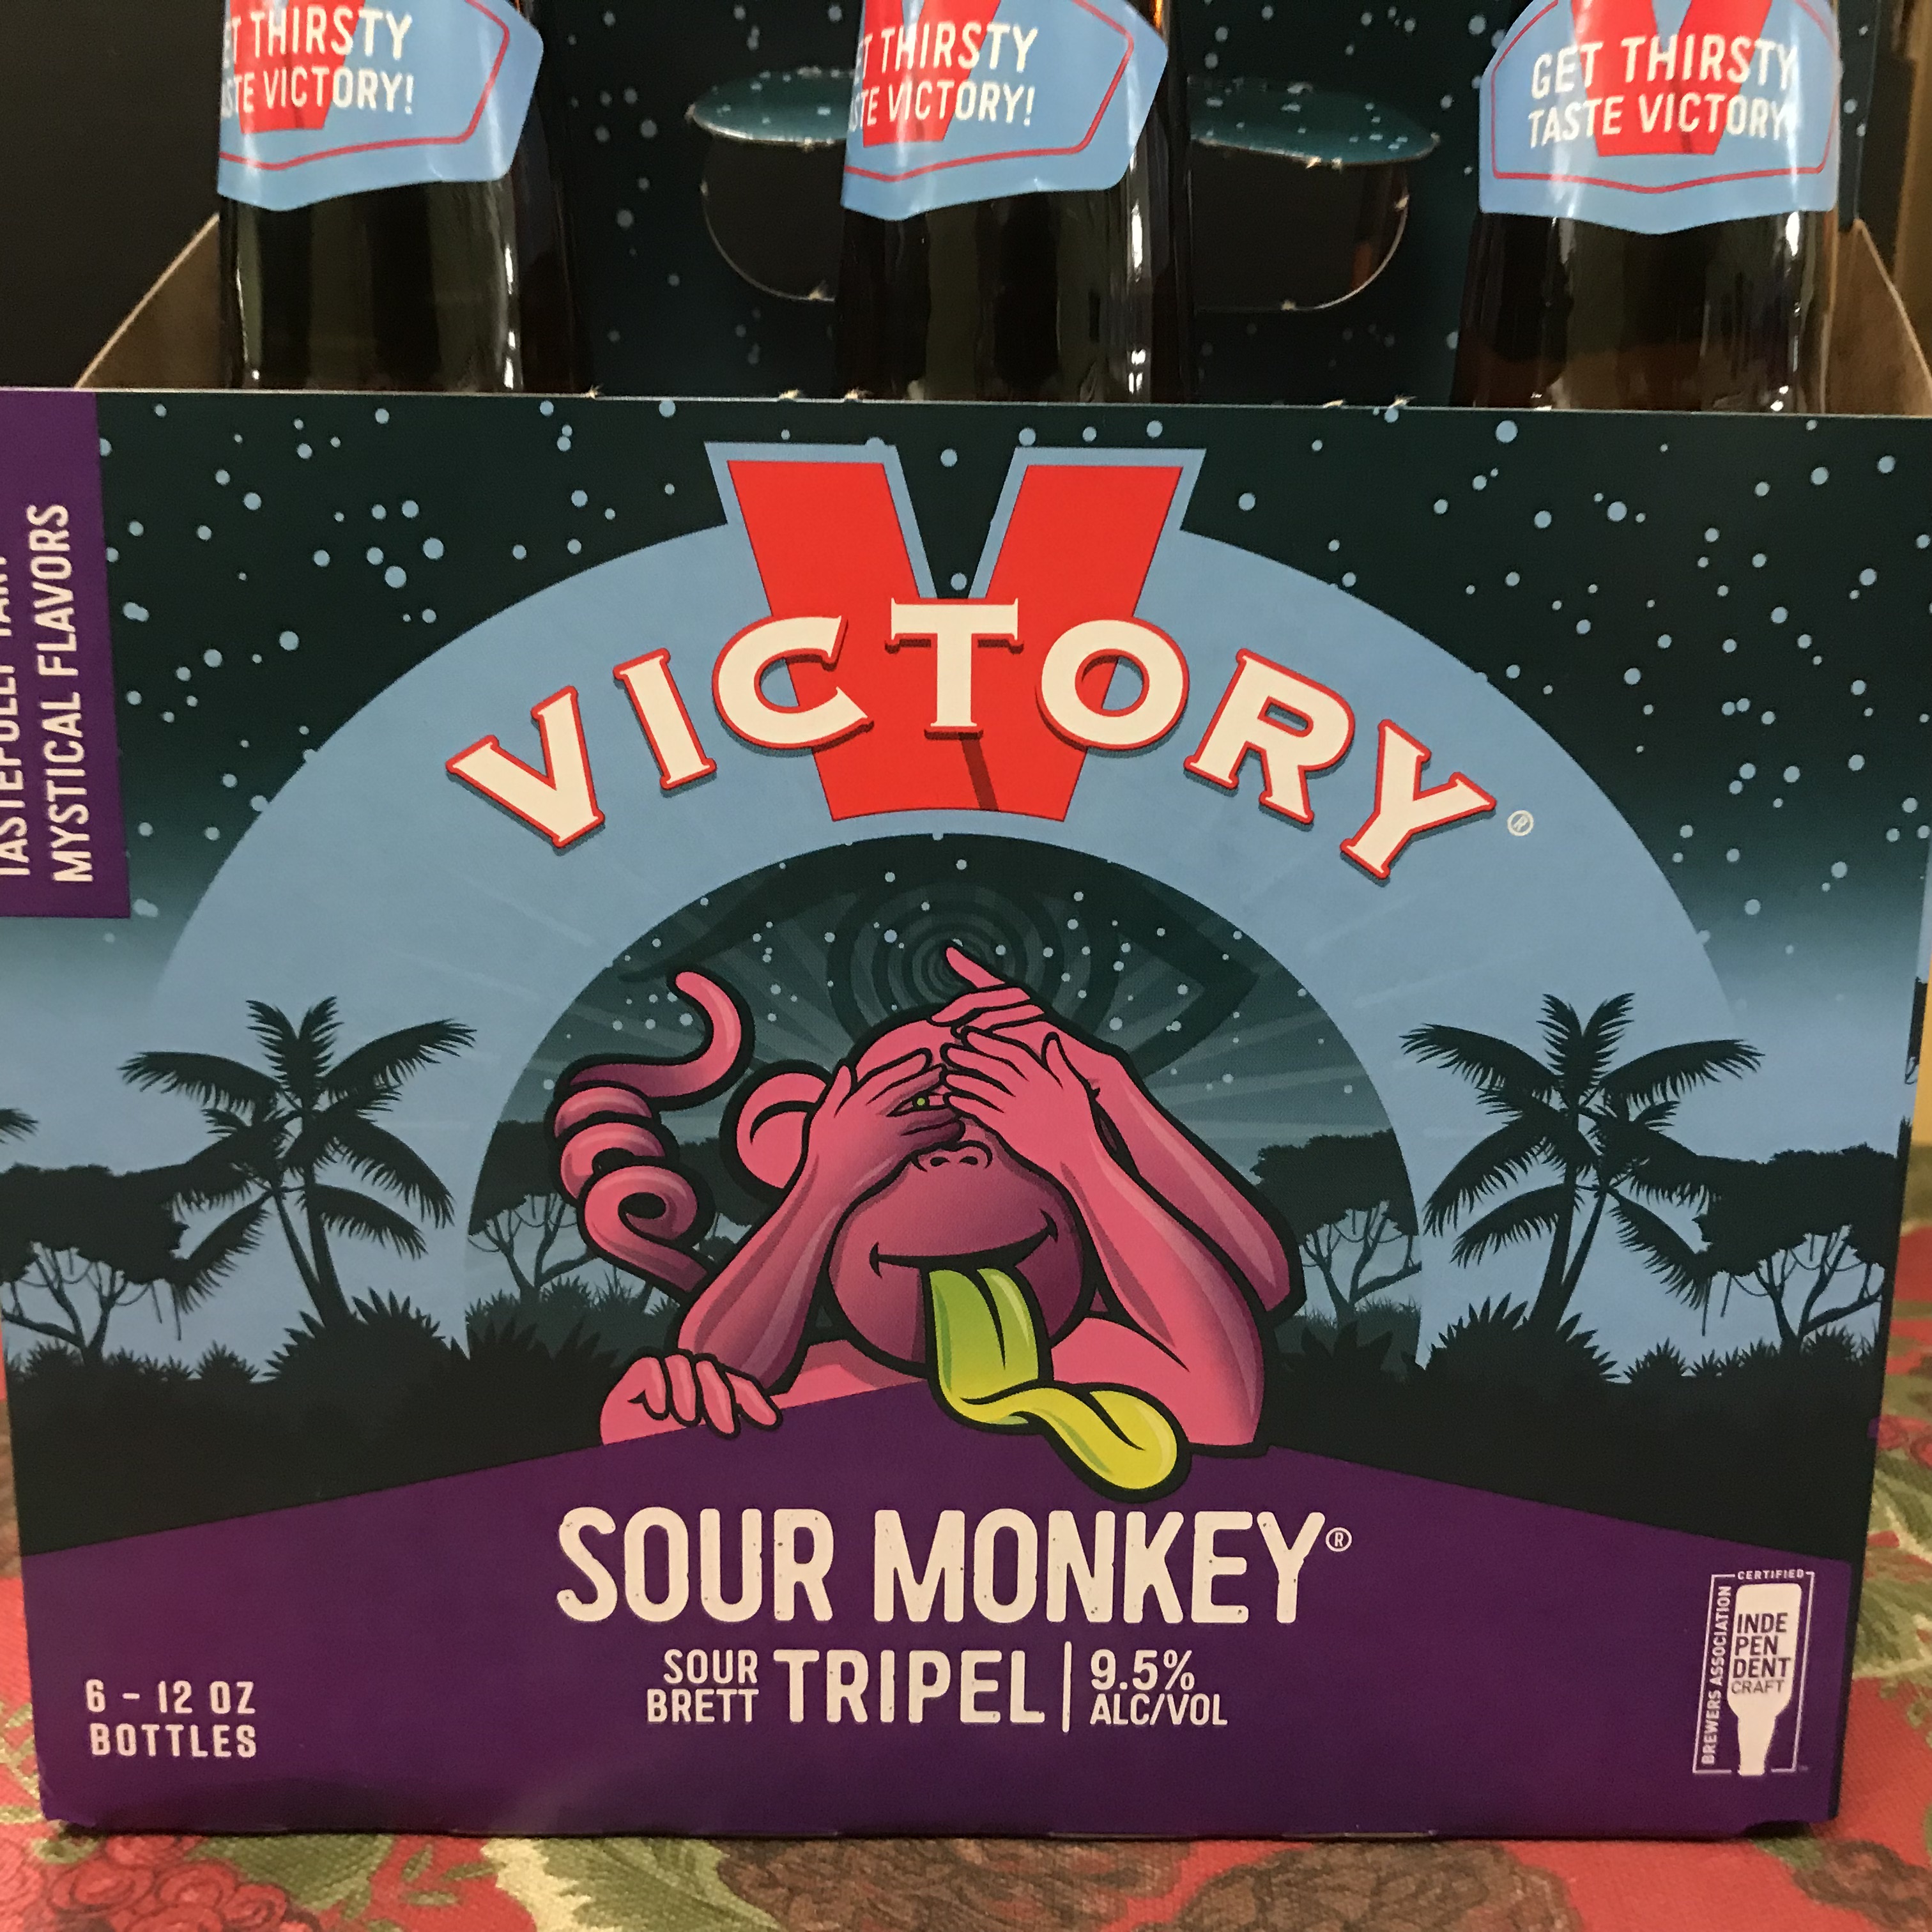 Victory Sour Monkey Sour Brett Triple Ale 6 x 12oz bottles